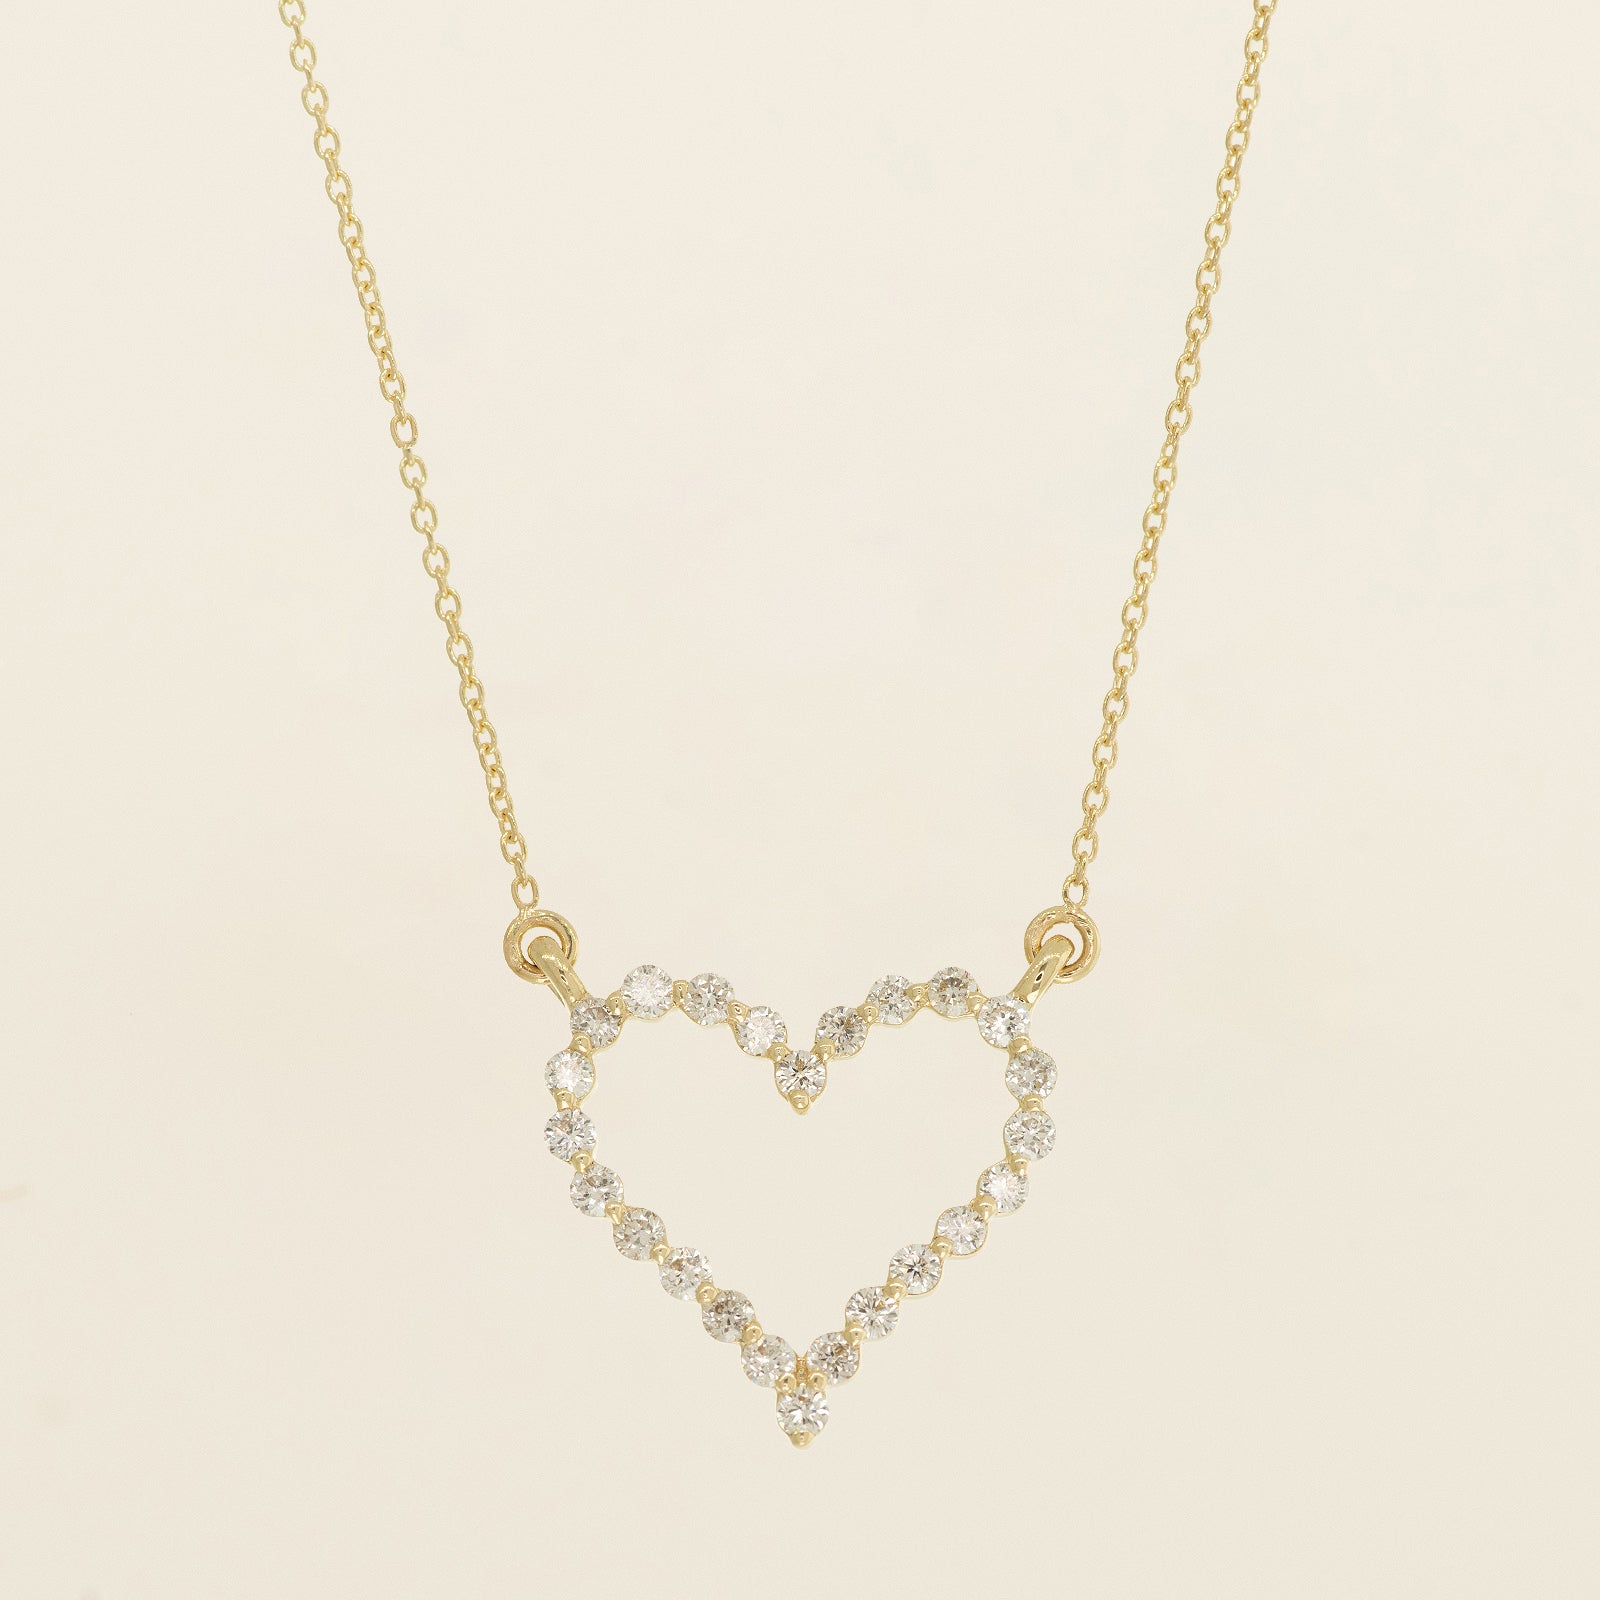 Buy Heart Diamond Necklaces